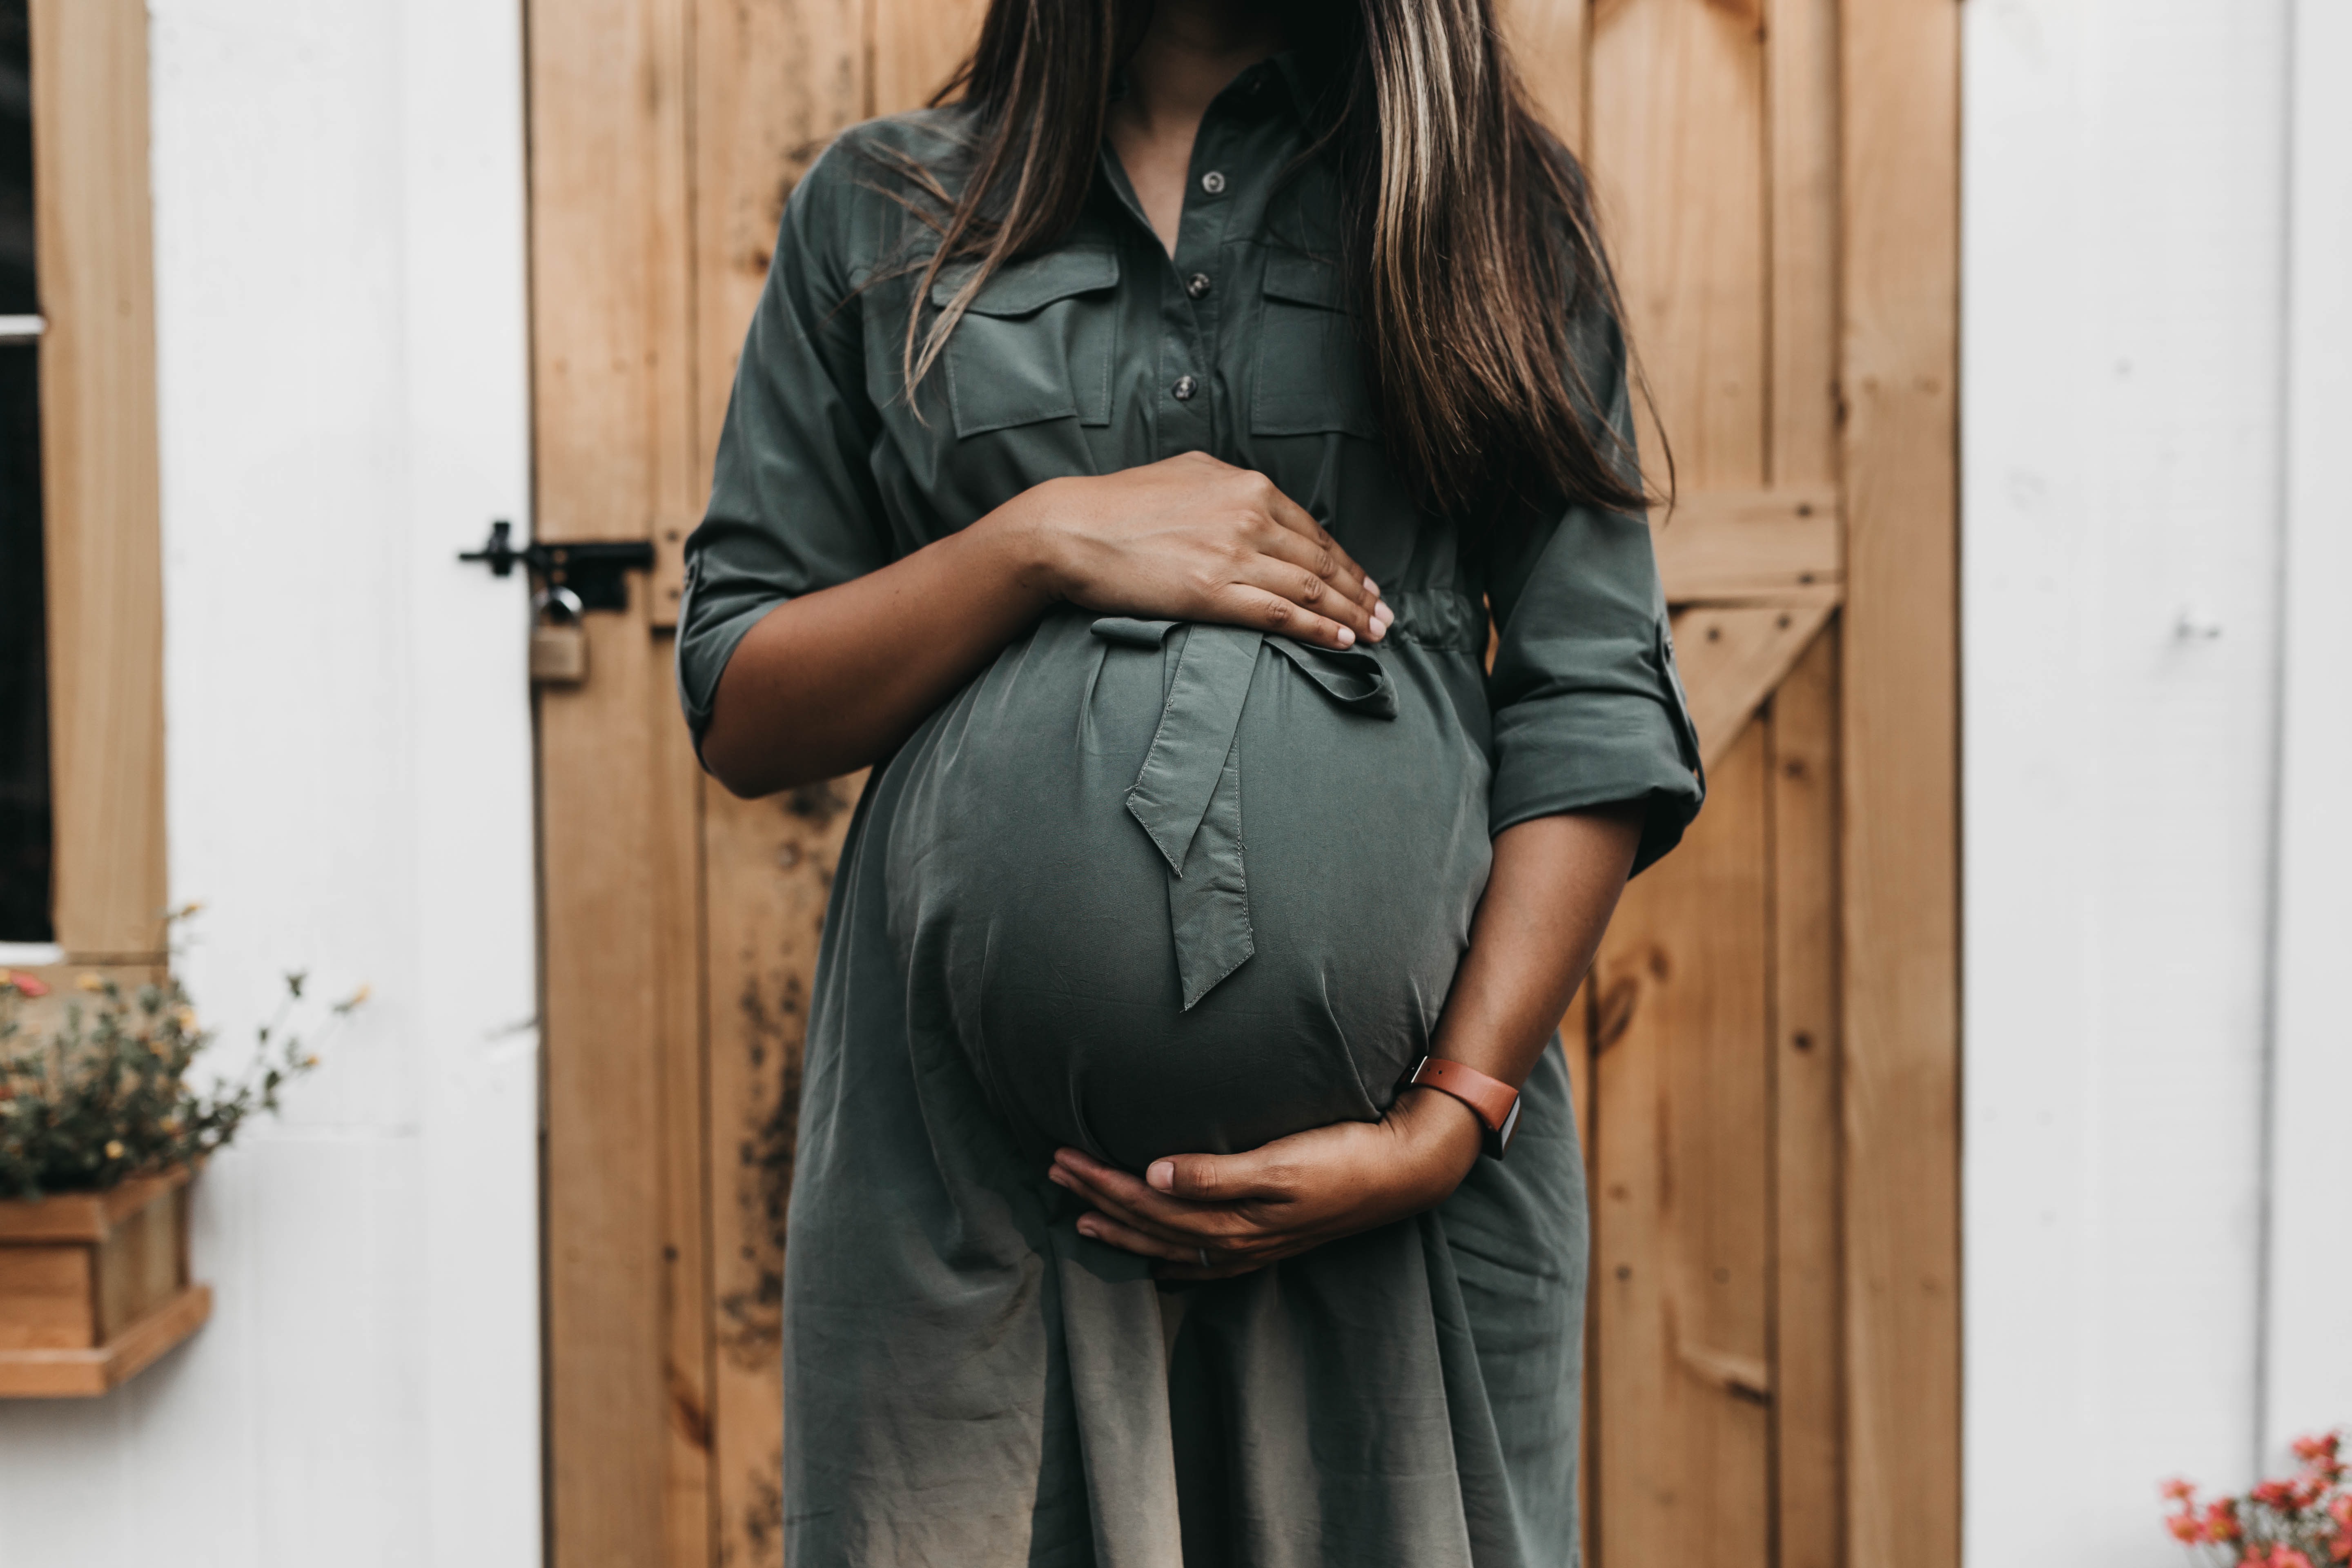 Easter & Spring Pregnancy Announcements: 5 Unique Ideas